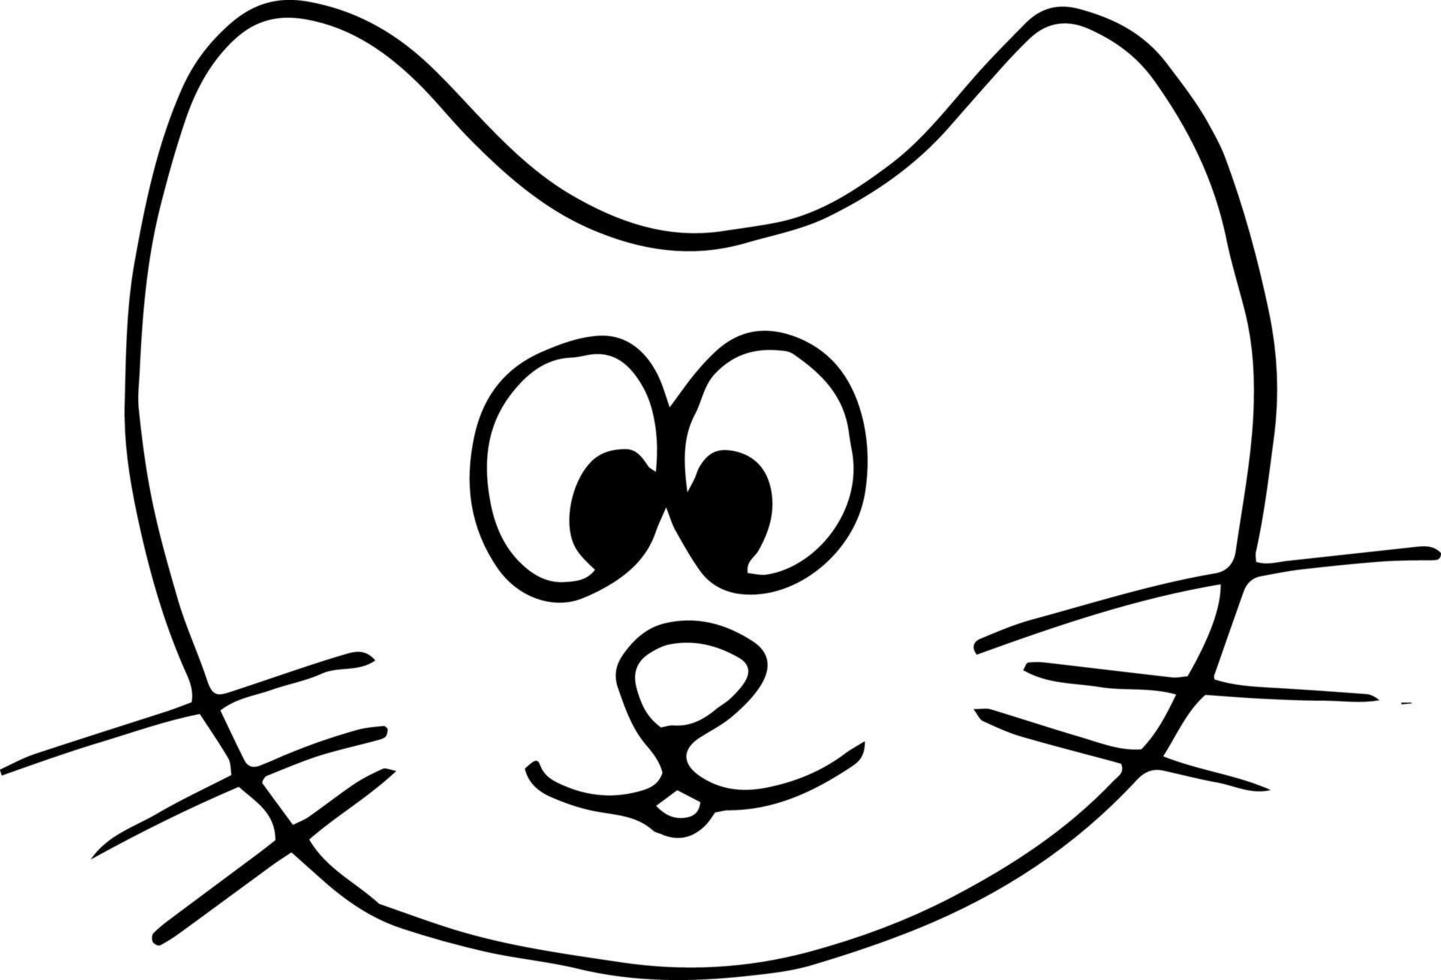 Katze handgezeichnetes Gekritzel. skandinavisch, nordisch, minimalismus, monochrome tiere kinder drucken aufkleberdekor vektor